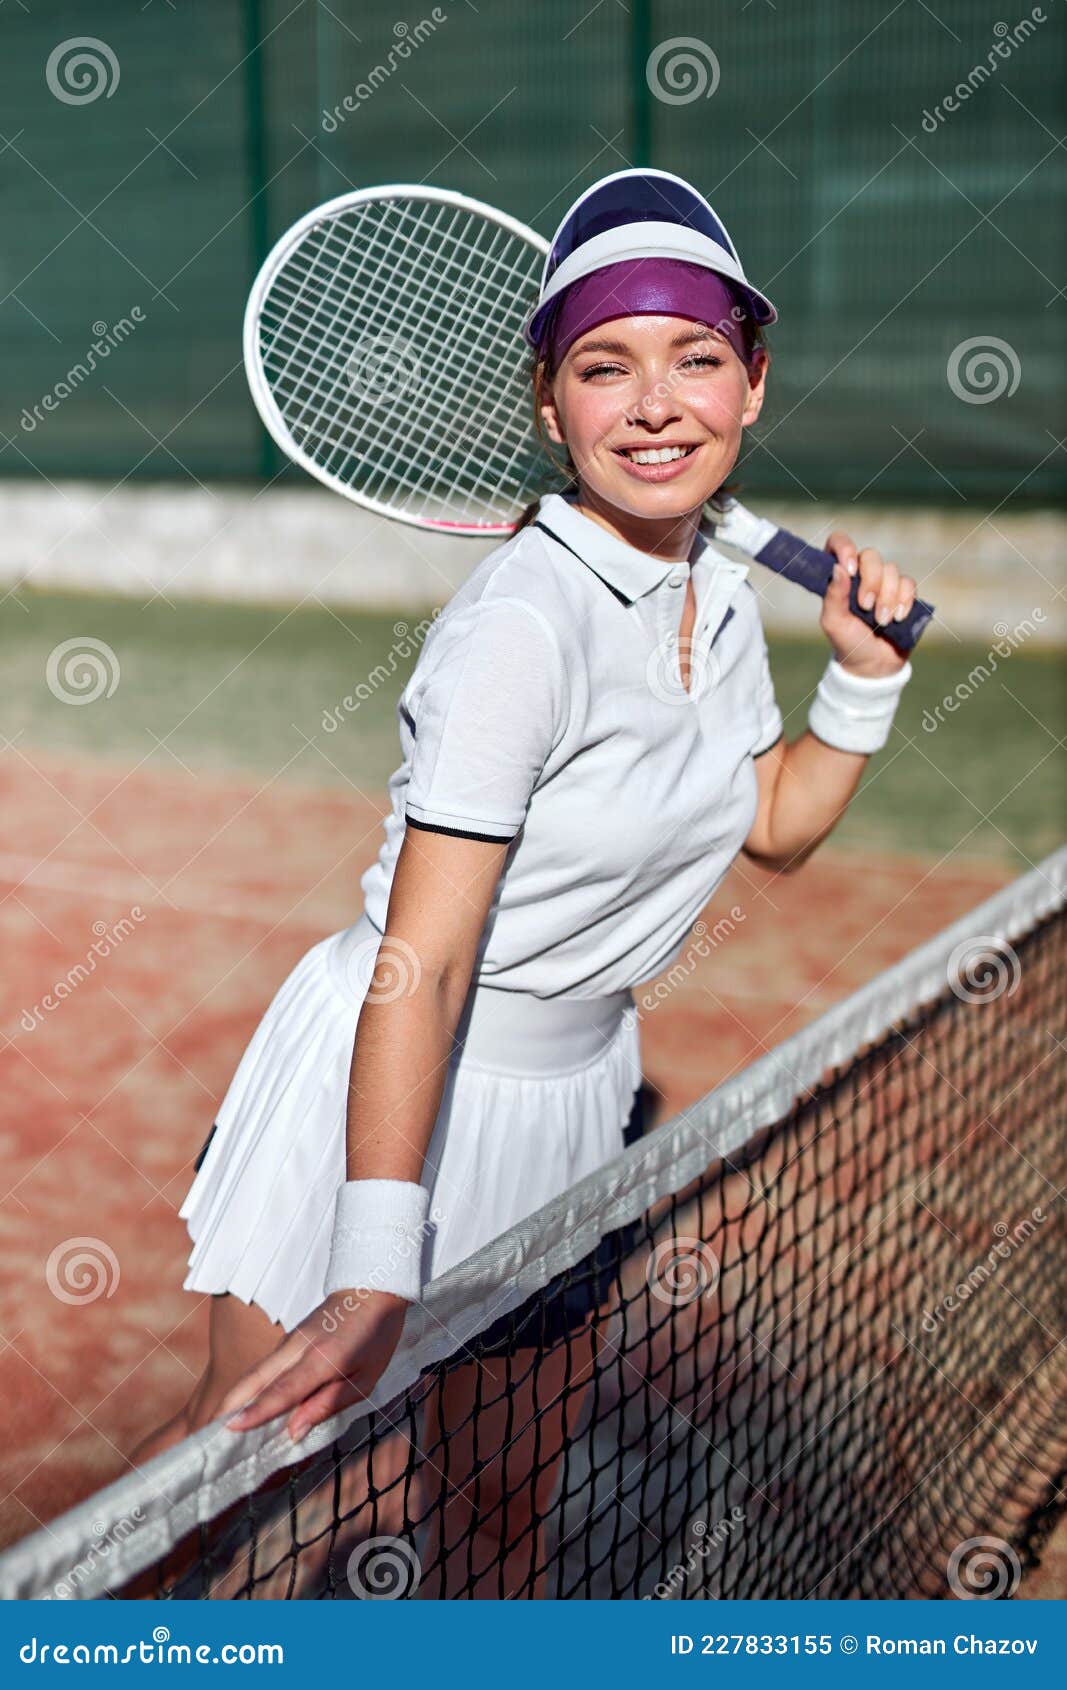 Está Listo Jugar. Mujer Sexy Y Hermosa Positiva En Ropa Deportiva Sosteniendo Raqueta De Tenis Imagen de archivo - Imagen raqueta, retrato: 227833155